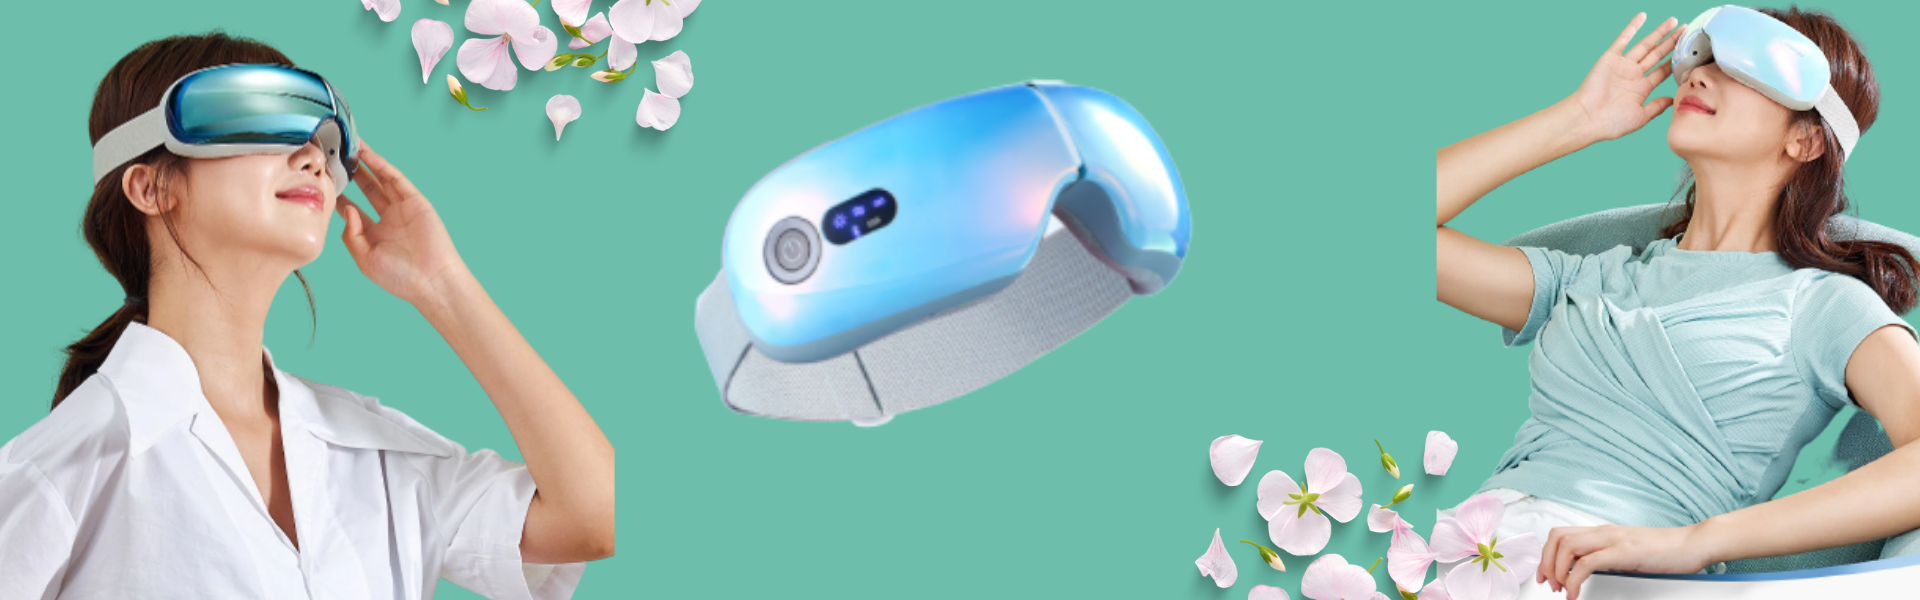 Máy massage mắt bằng nhiệt và công nghệ nén giúp thư giãn giảm mỏi mắt và cải thiện giấc ngủ